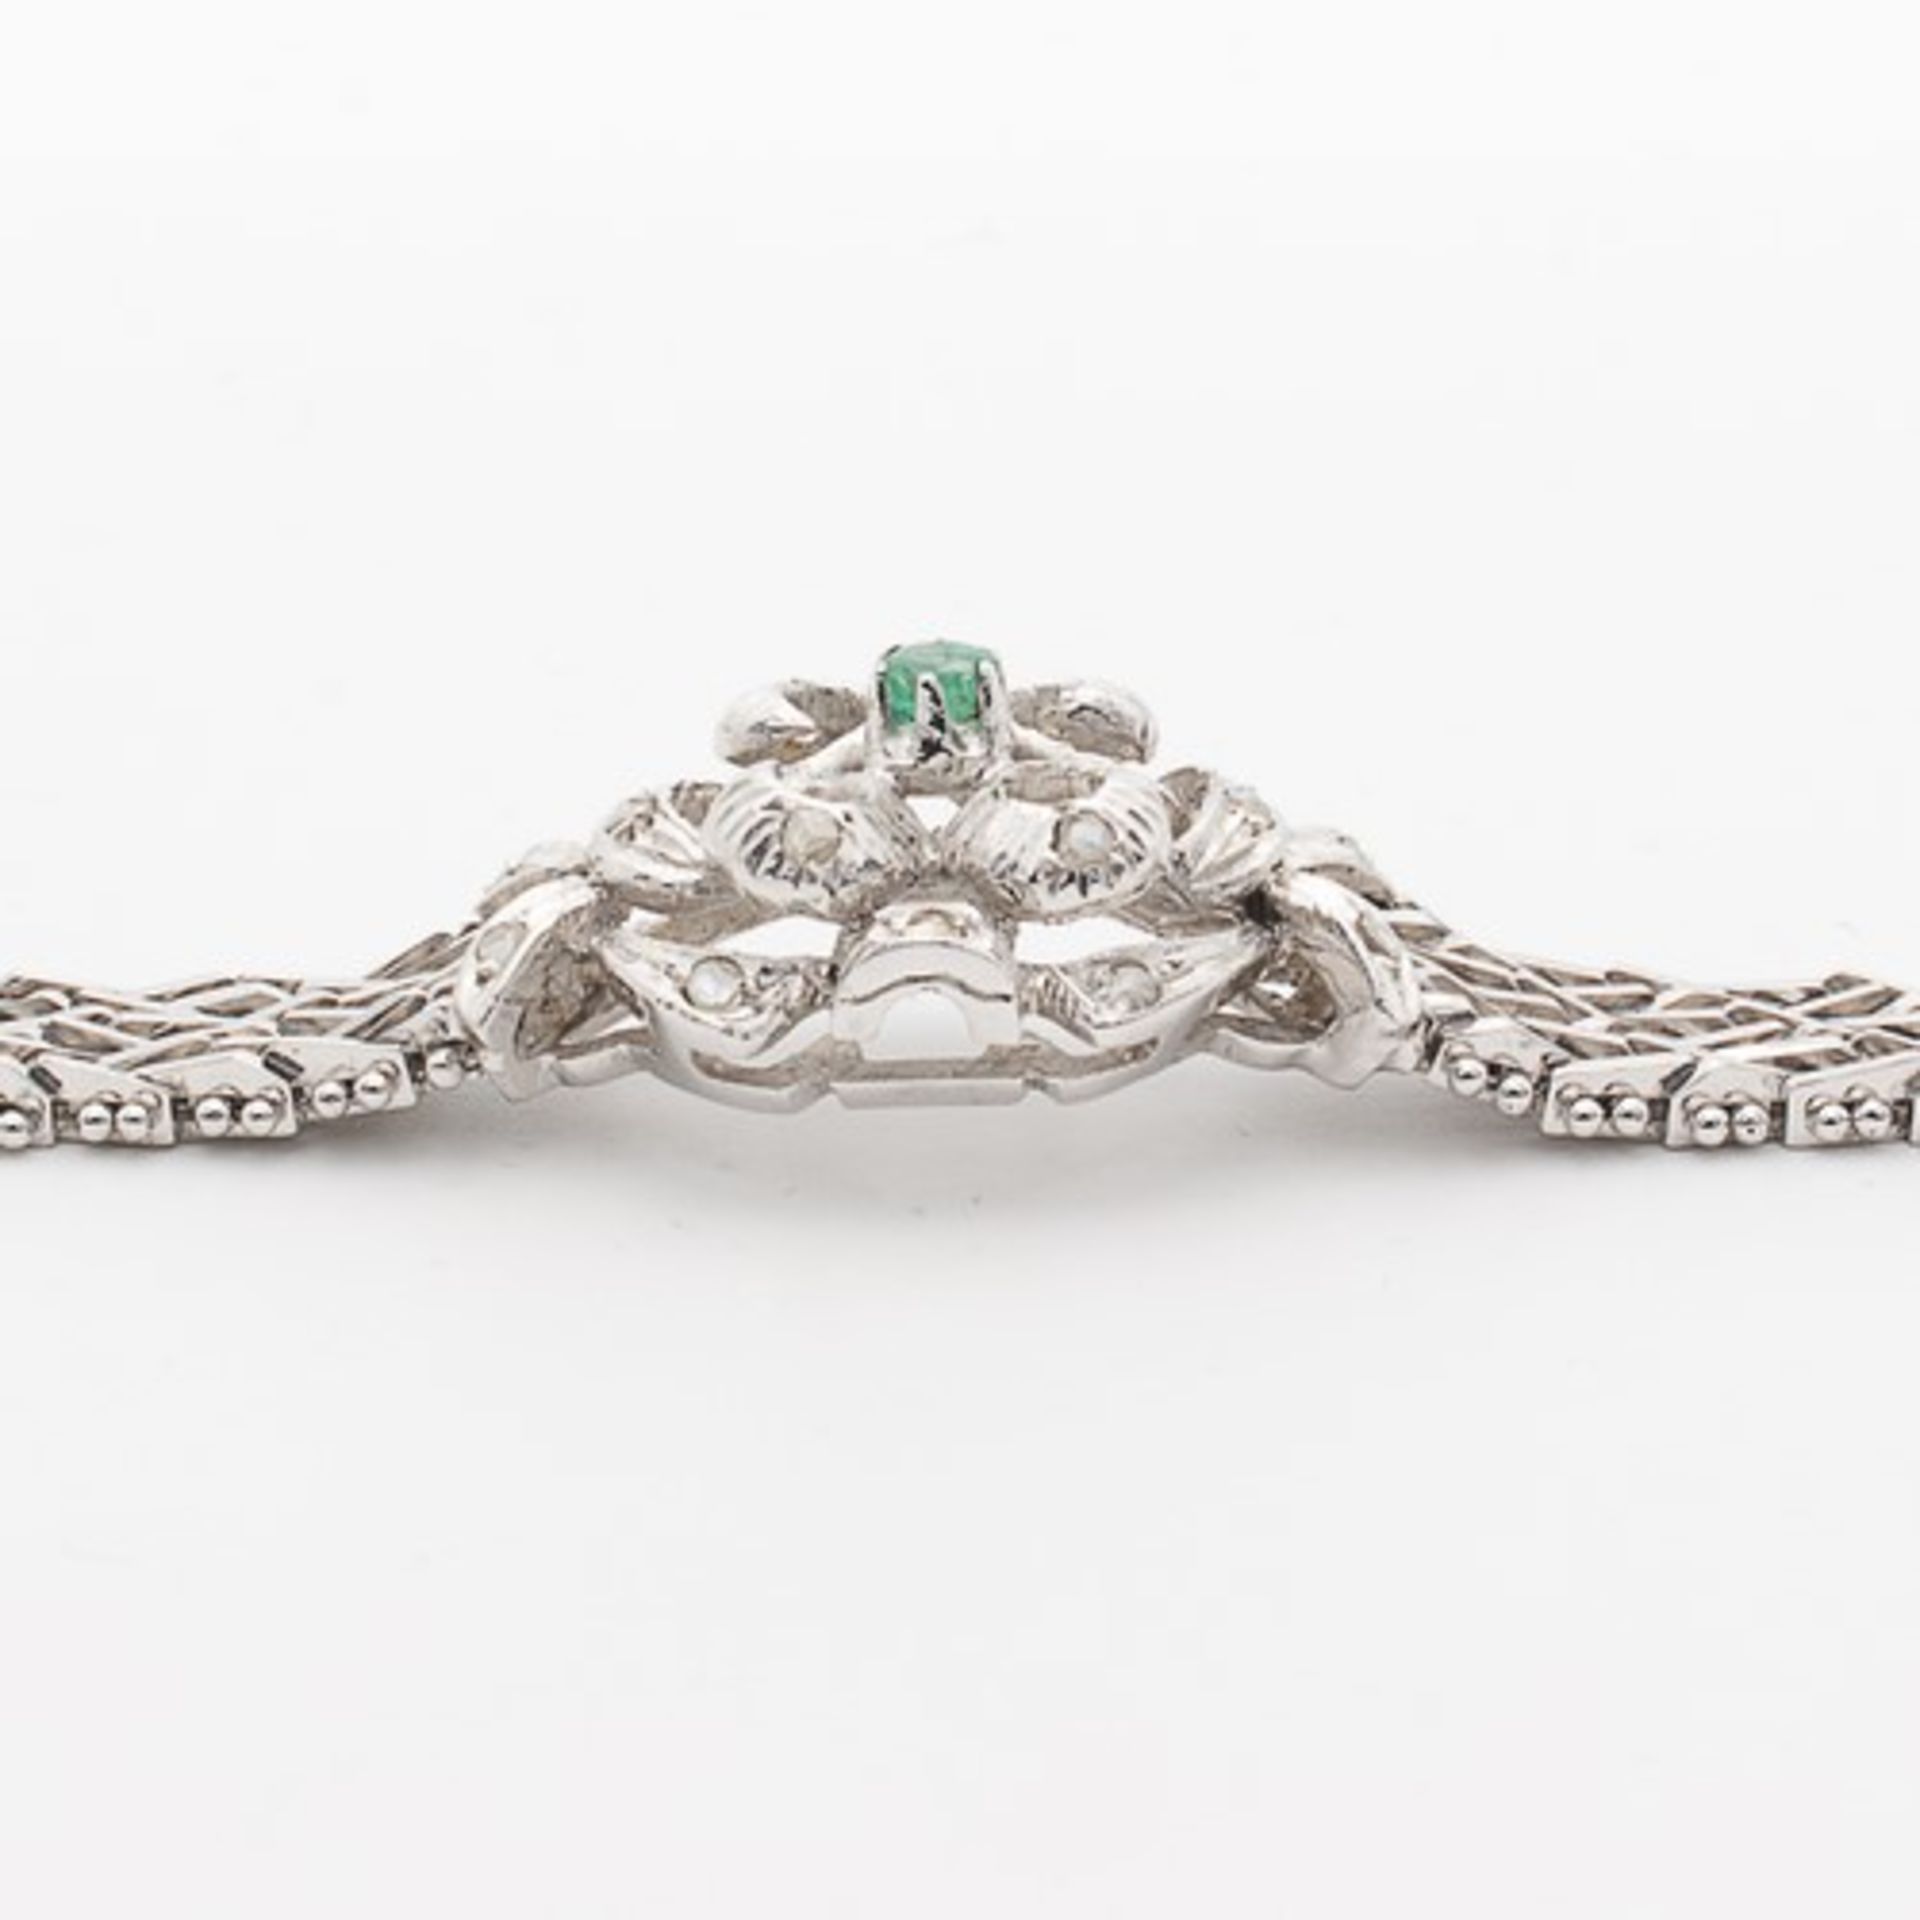 Diamant/Smaragd - ArmbandWG 750, florales, durchbrochenes Mittelteil, besetzt mit Diamantrosen u. - Bild 5 aus 6